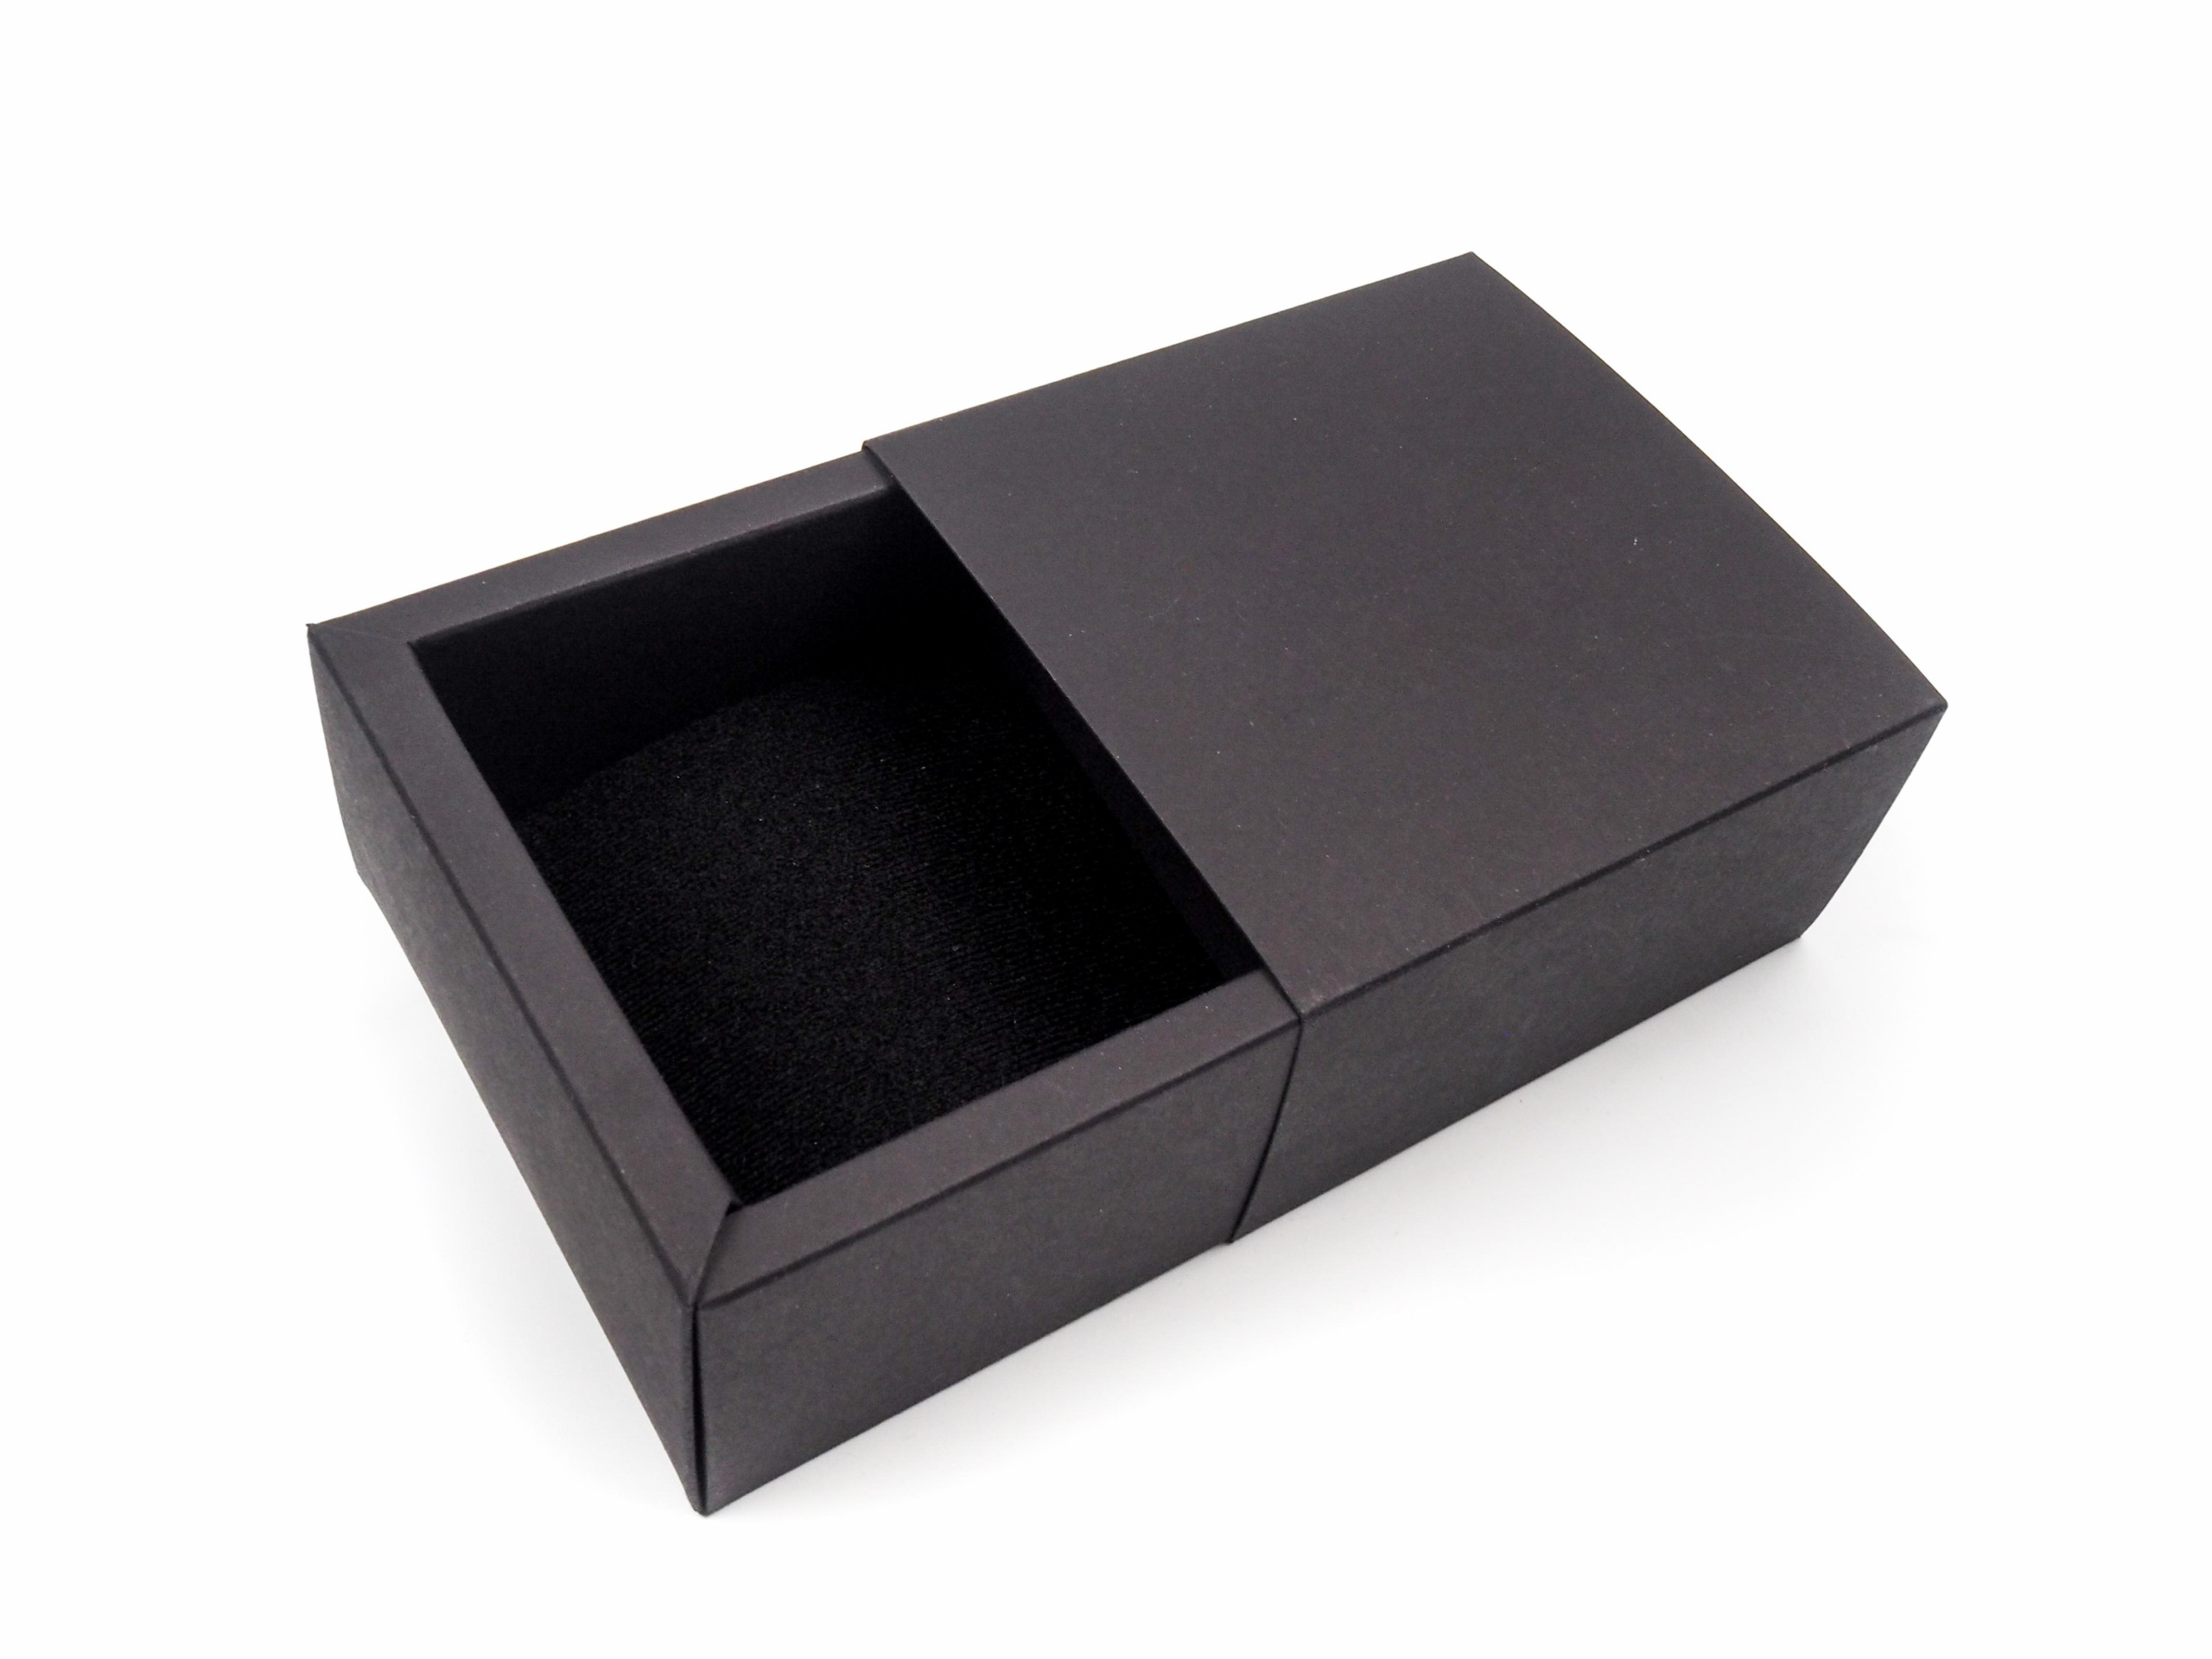 Dárková krabička byla vyrobena na vložení šperků s požadavkem na vysouvání z boku. Uvnitř byl vložena tenká molitanová vložka.